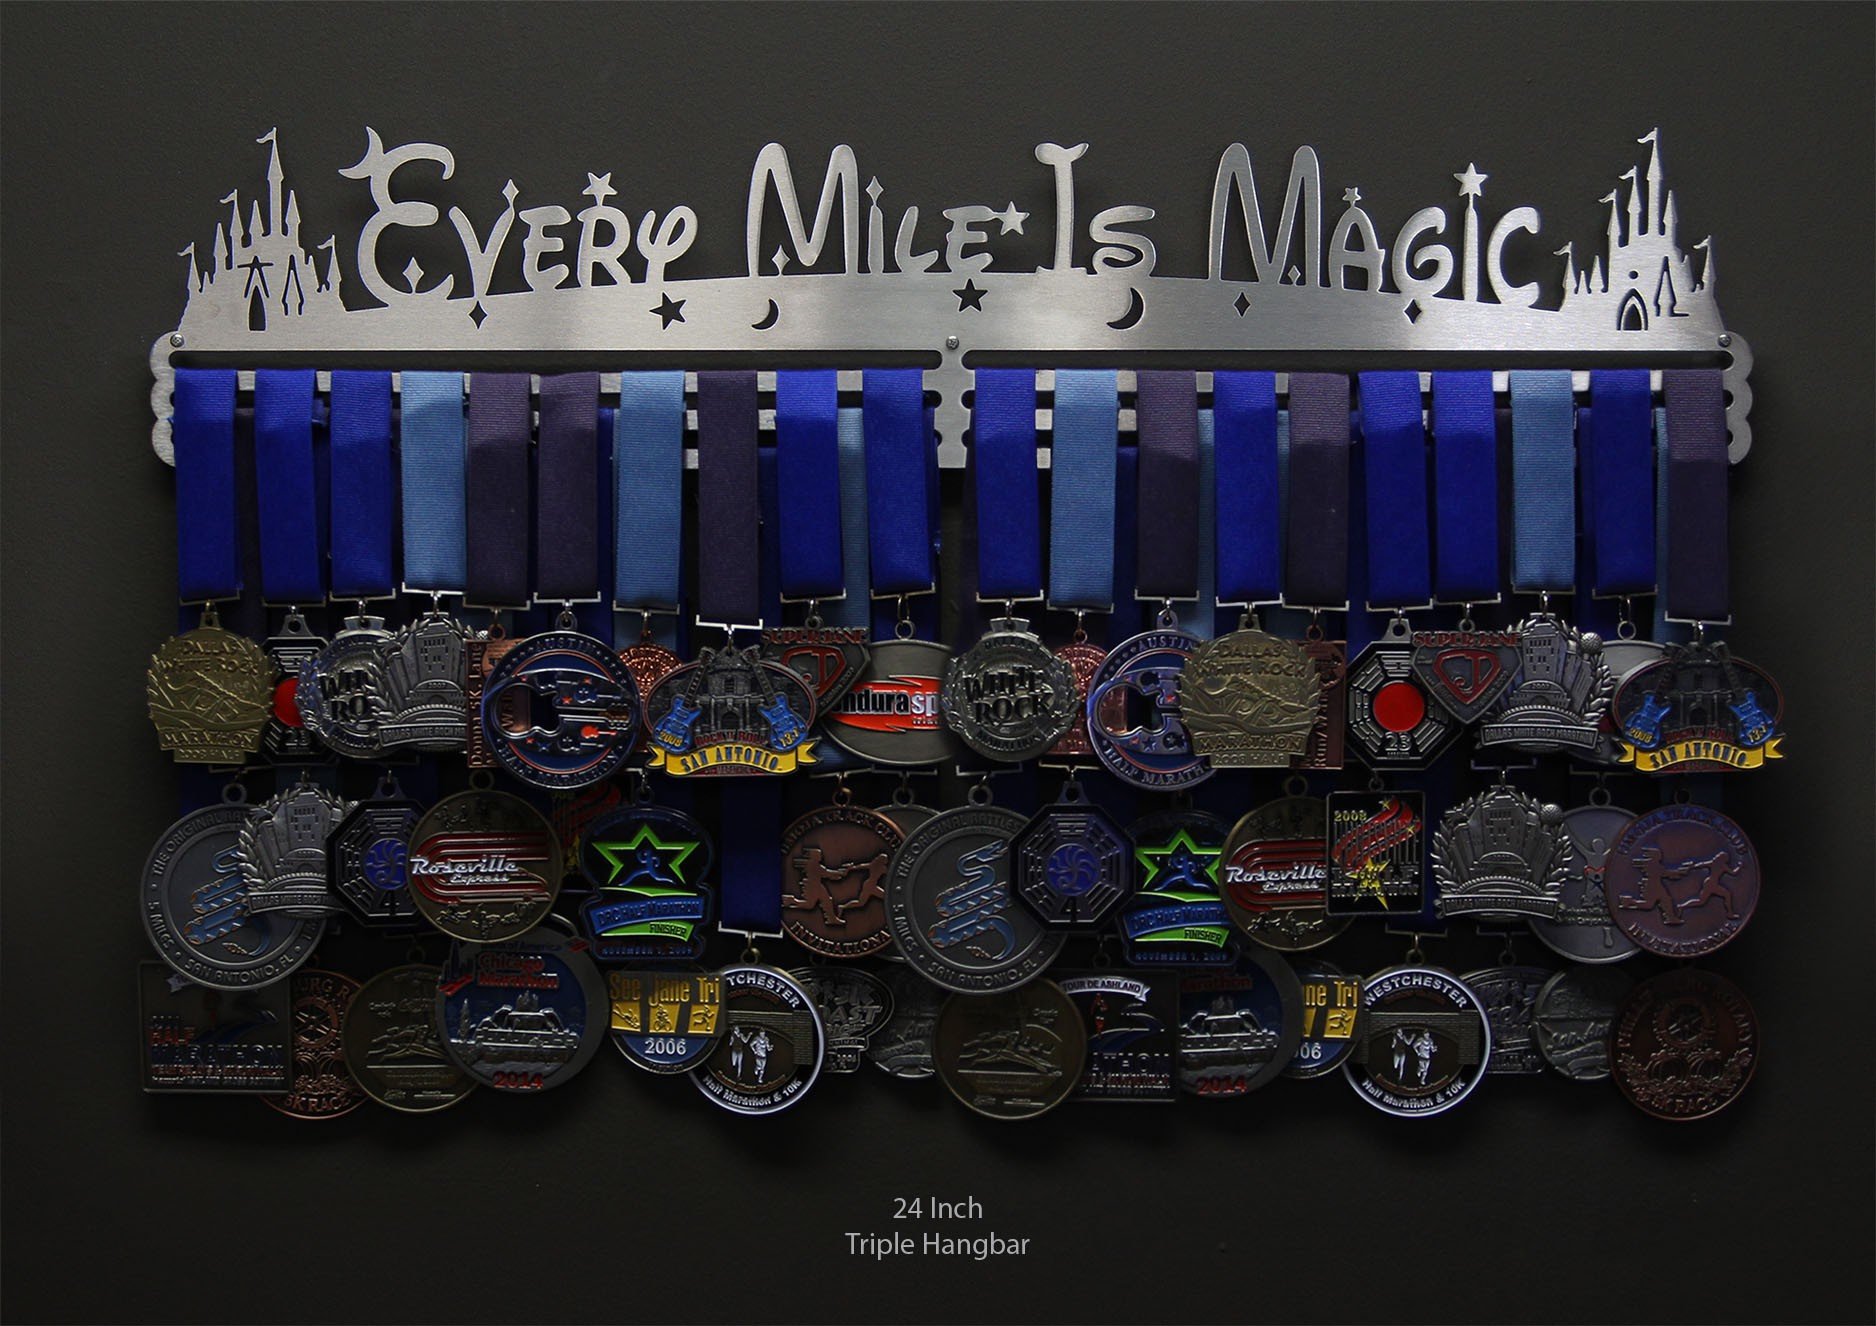 Every Mile Is Magic - original design